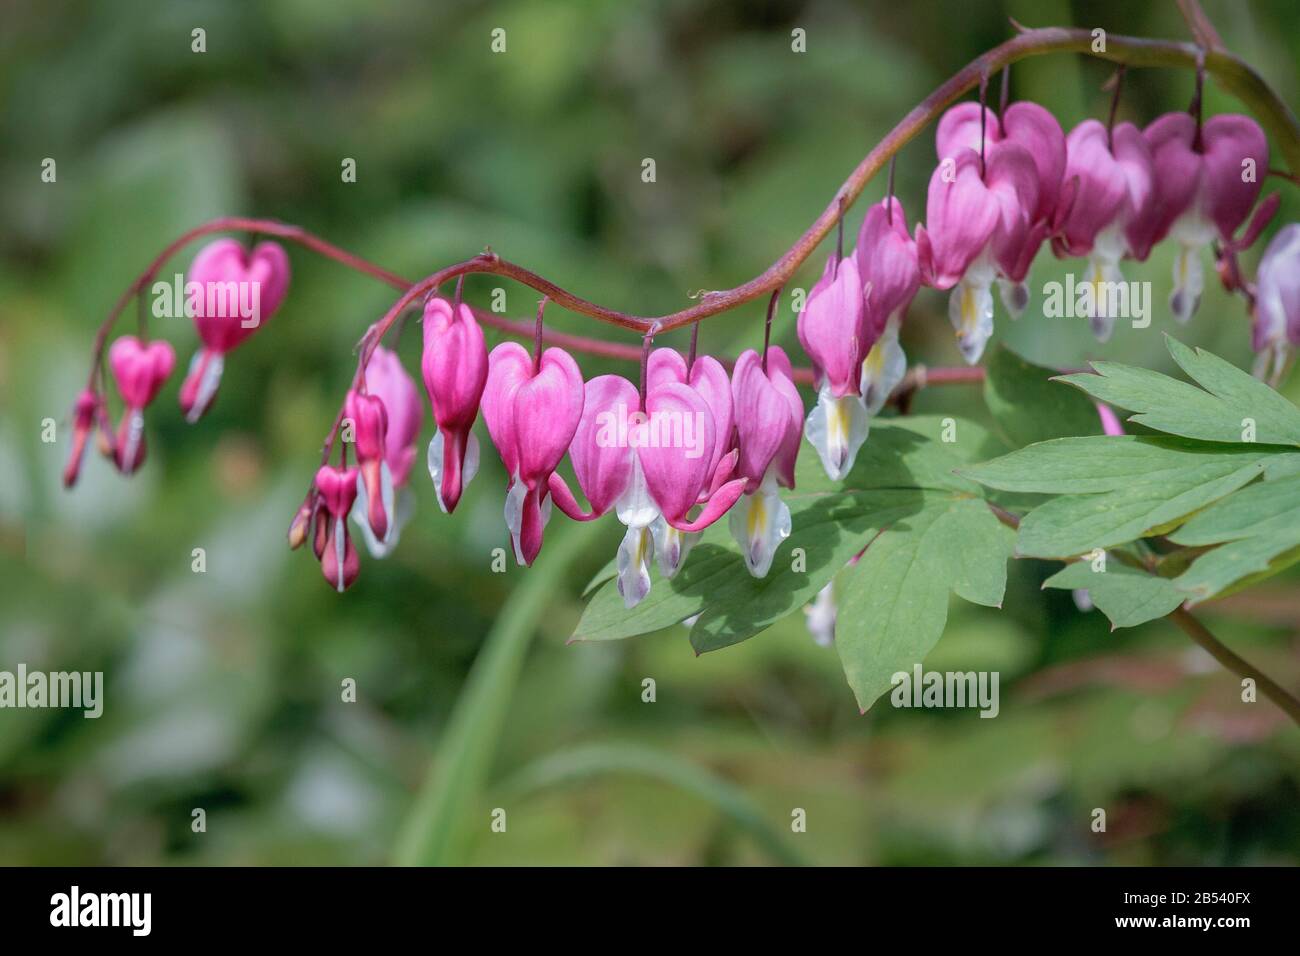 Linien von leuchtend rosafarbenen und weiß blutenden Herzblumen hängen von zart ablaufenden horizontalen Stielen mit einem verschwommenen grünen Waldhintergrund. Stockfoto